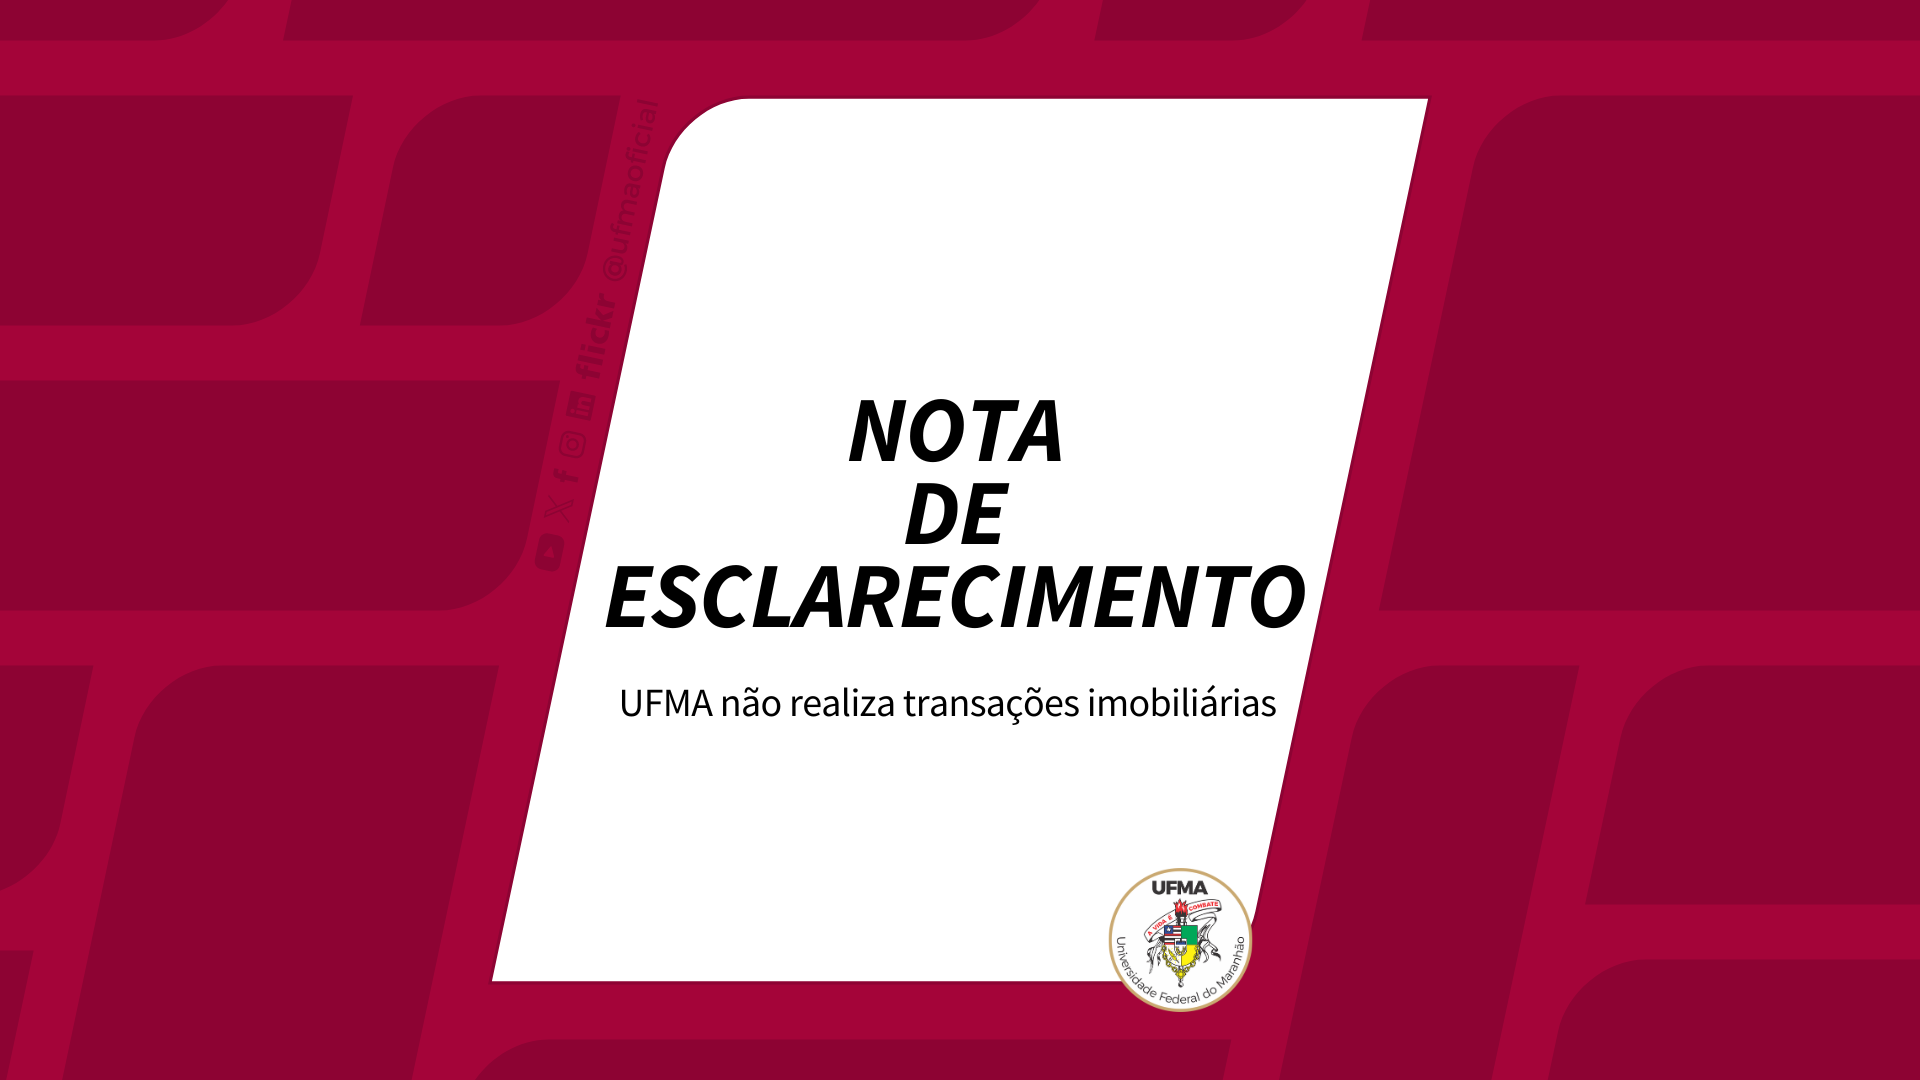 UFMA alerta que não realiza transações imobiliárias no bairro Sá Viana